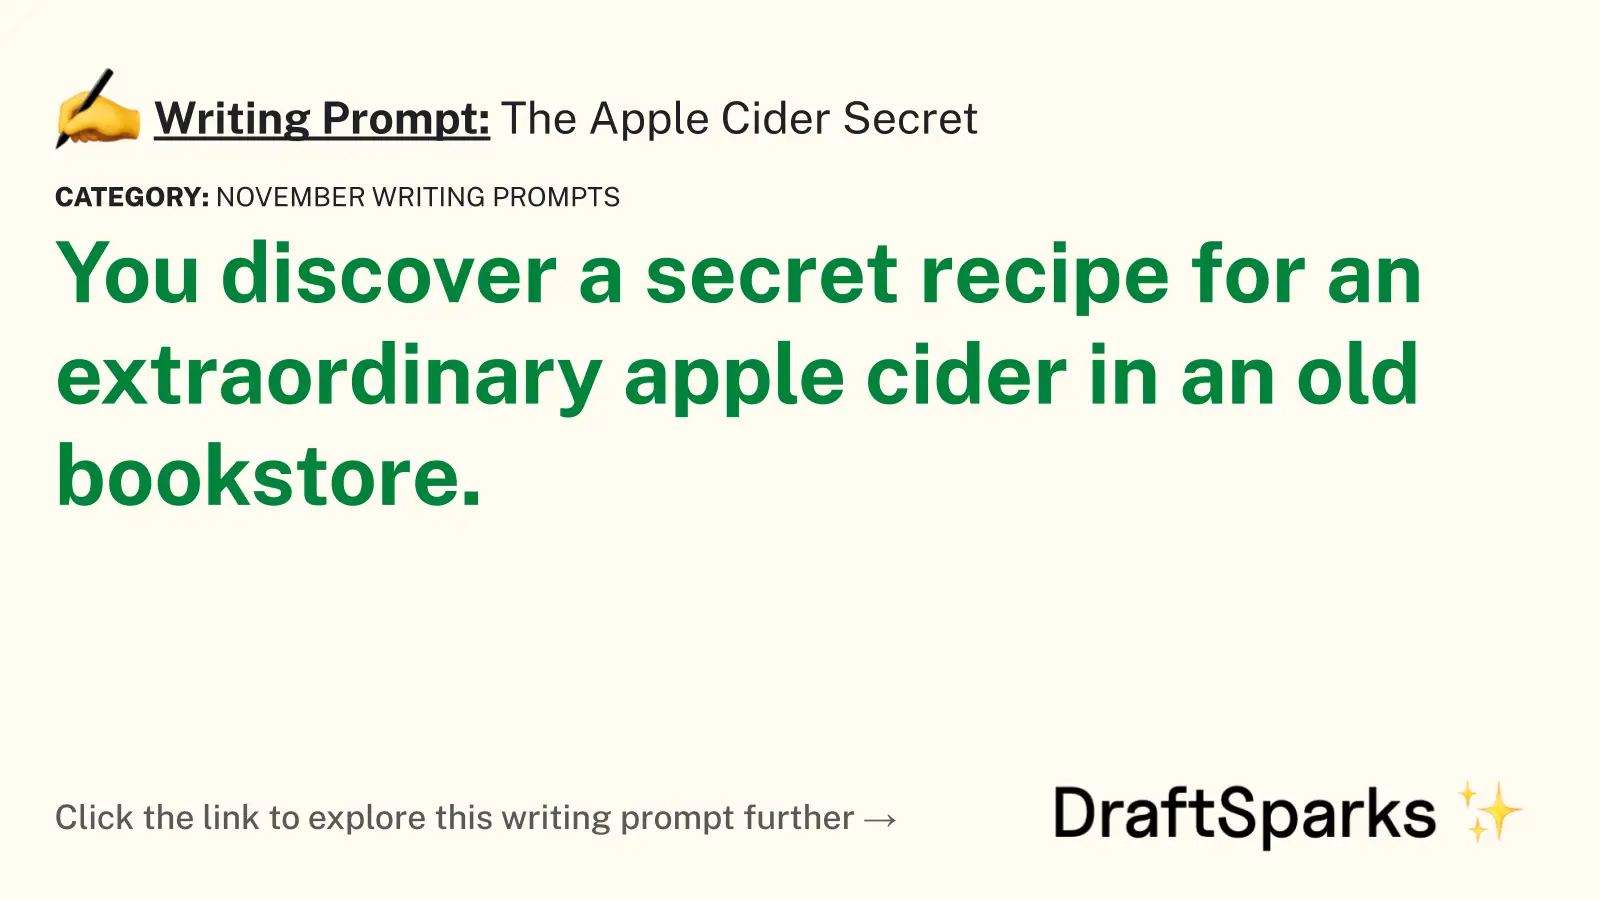 The Apple Cider Secret